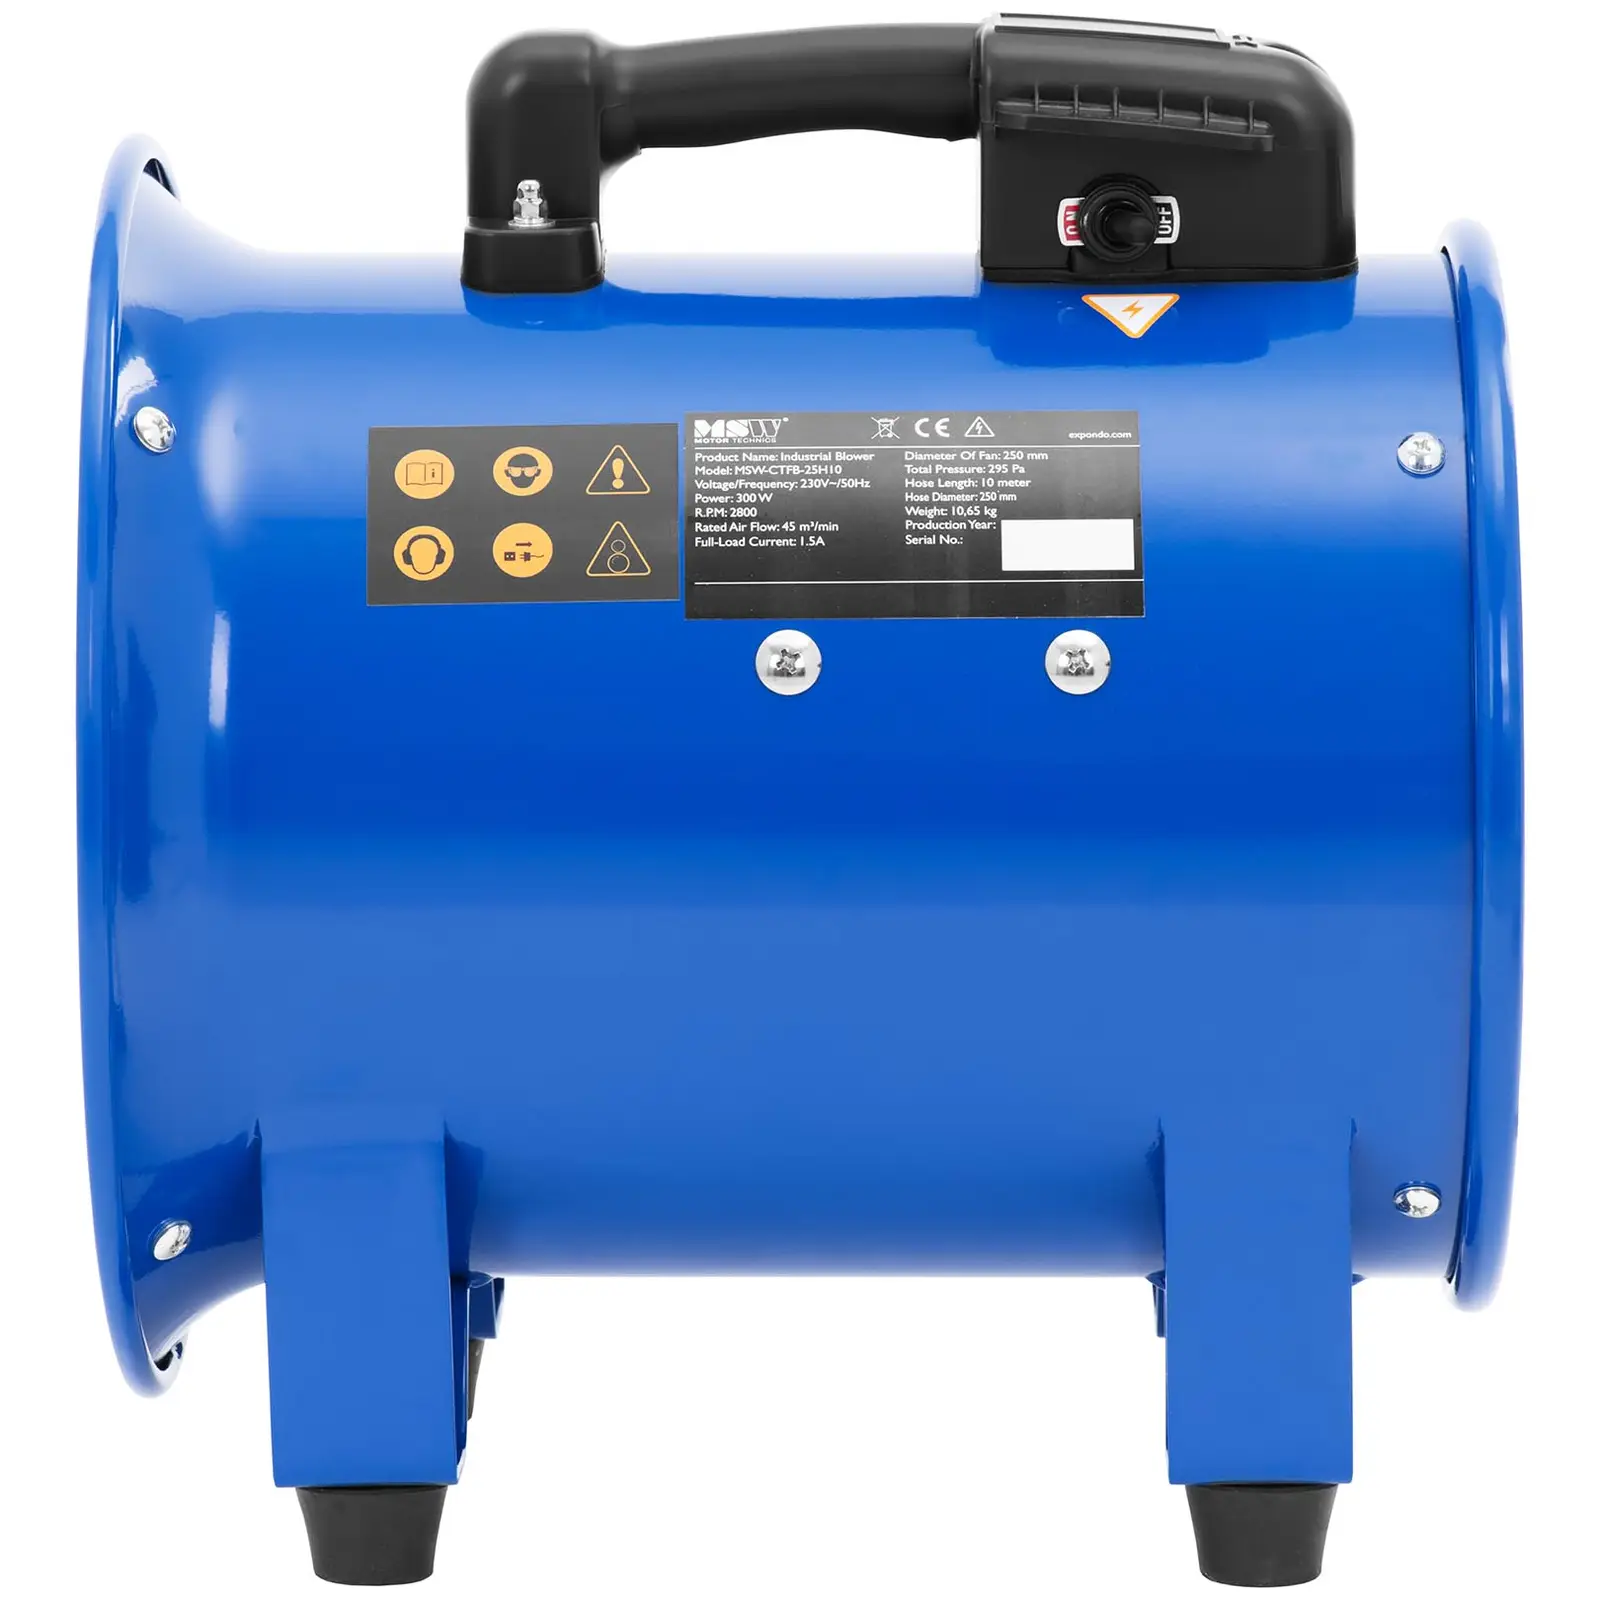 Ventilateur industriel - 2700 m³/h - Ø 280 mm